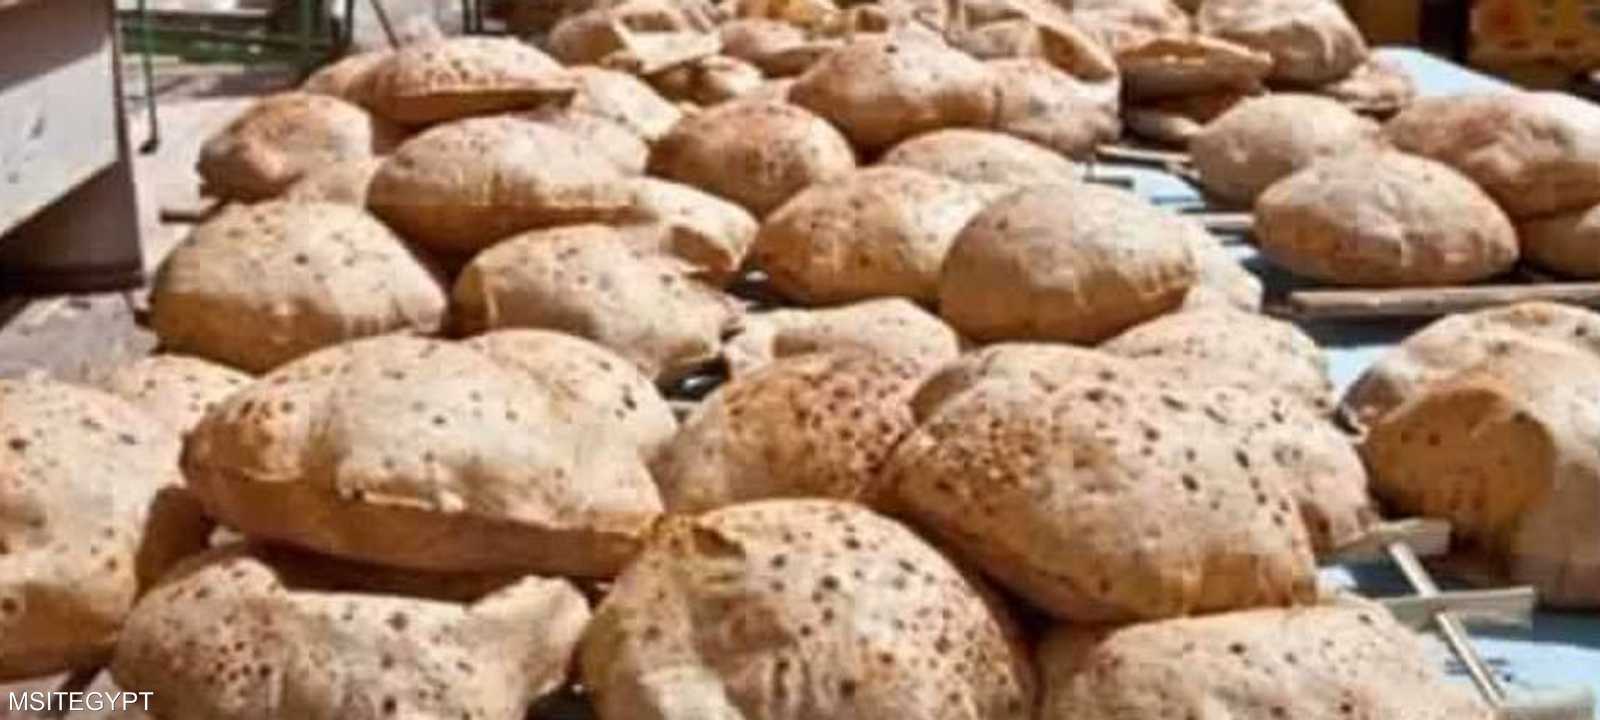 وزارة التموين تنفي إضافة مادة للخبز لتقليل الكثافة السكانية.